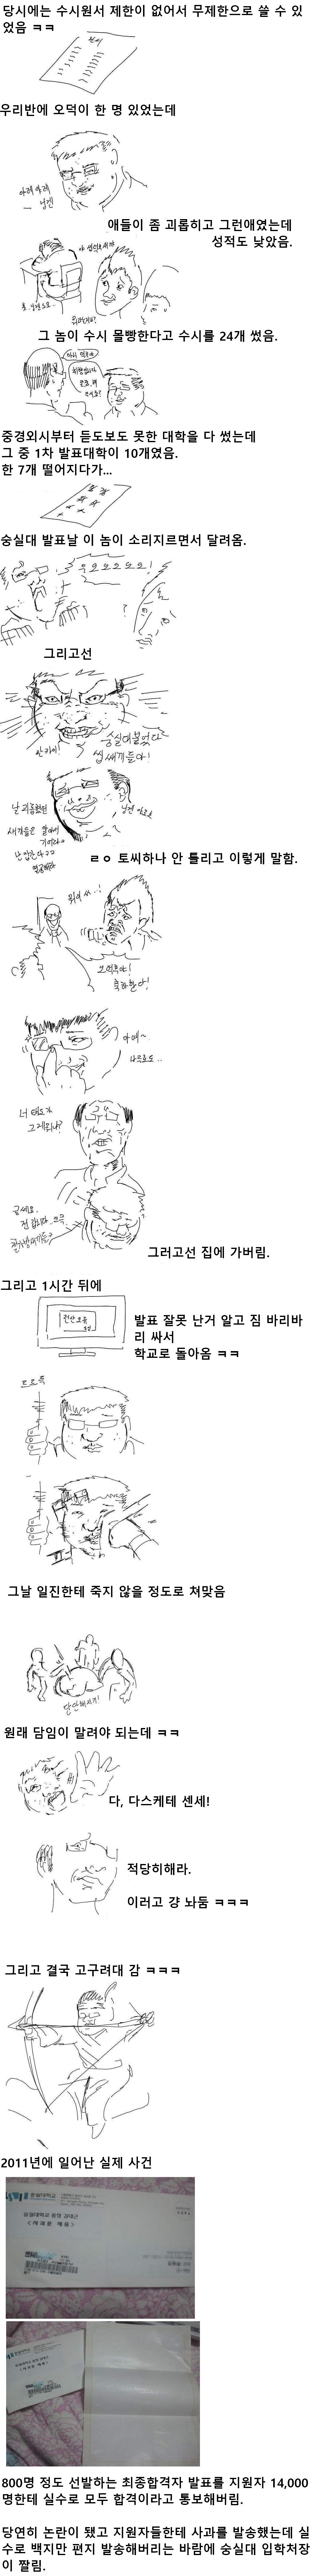 오덕후가 숭실대 붙은 만화.Manhwa.png.jpg